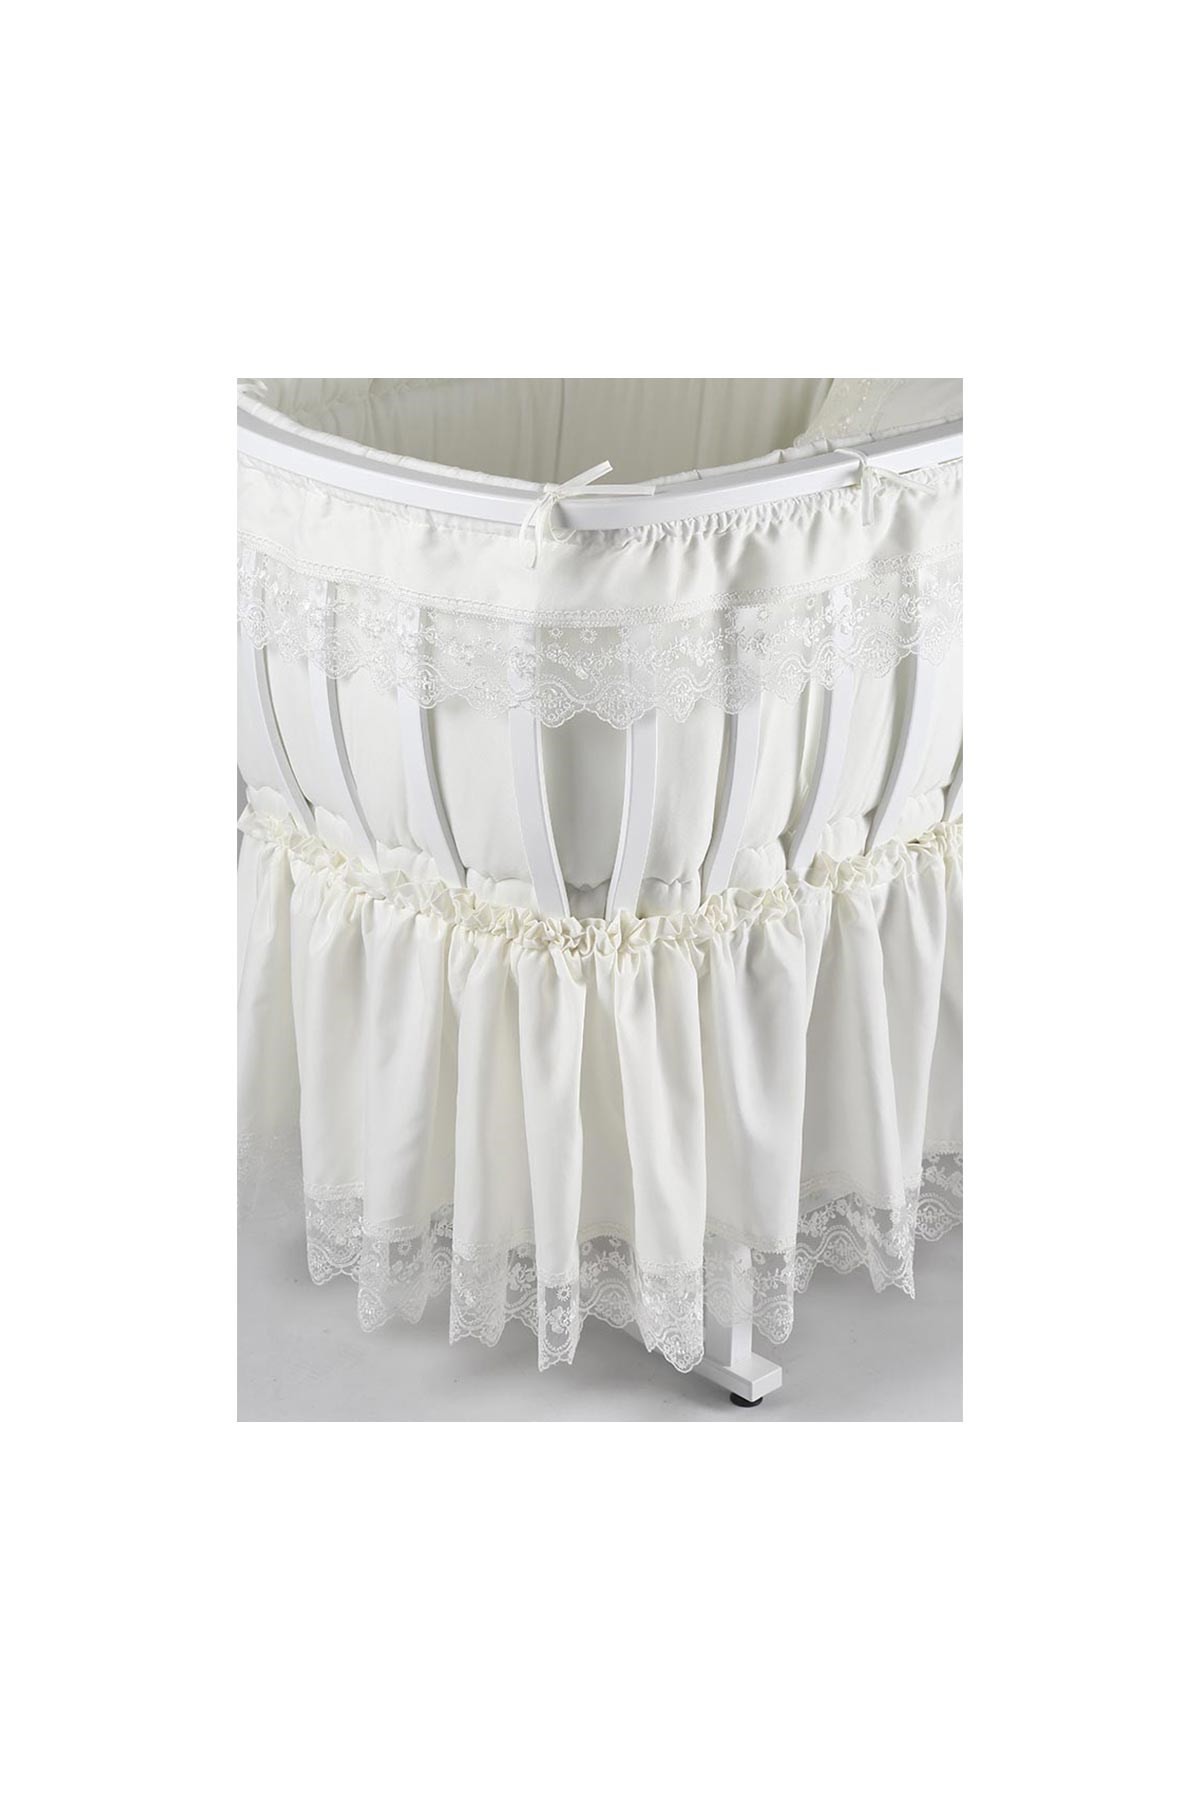 Tahterevalli Elegance Beşik Tekstil Beyaz Beyaz